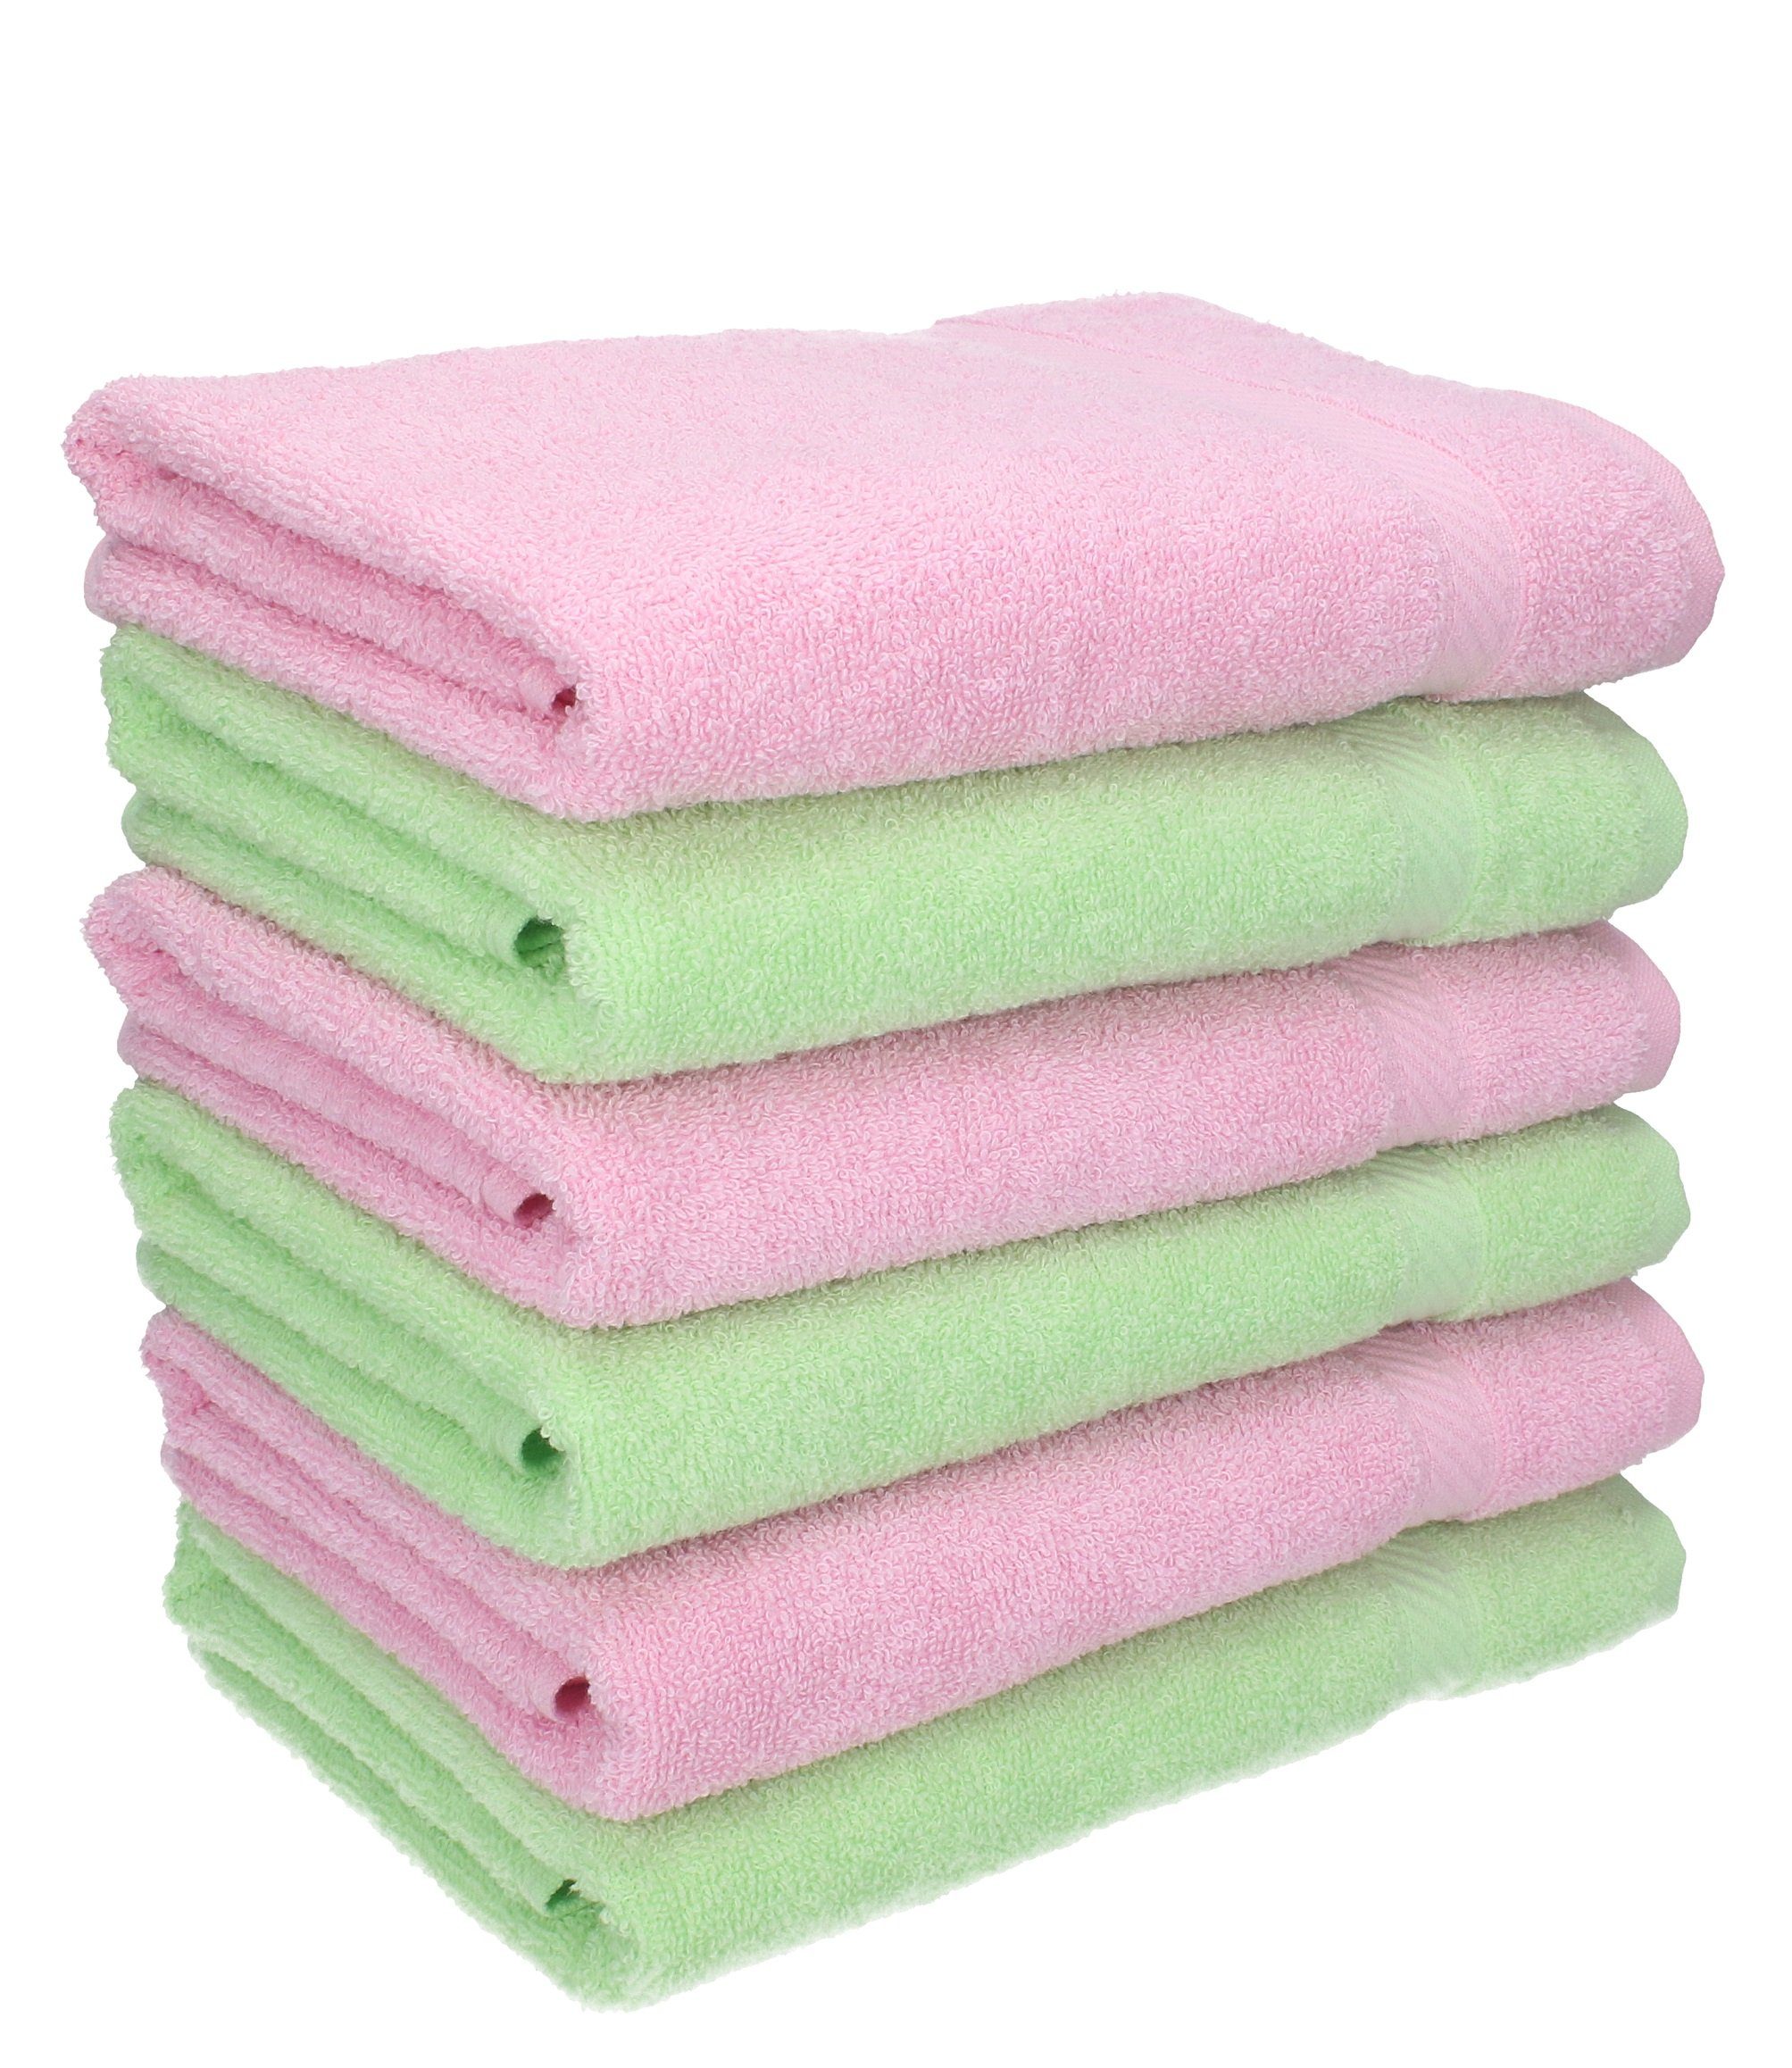 Betz Handtücher 6 Stück HandtücherPalermo Größe 50 x 100 cm Farbe grün und rosé, 100% Baumwolle